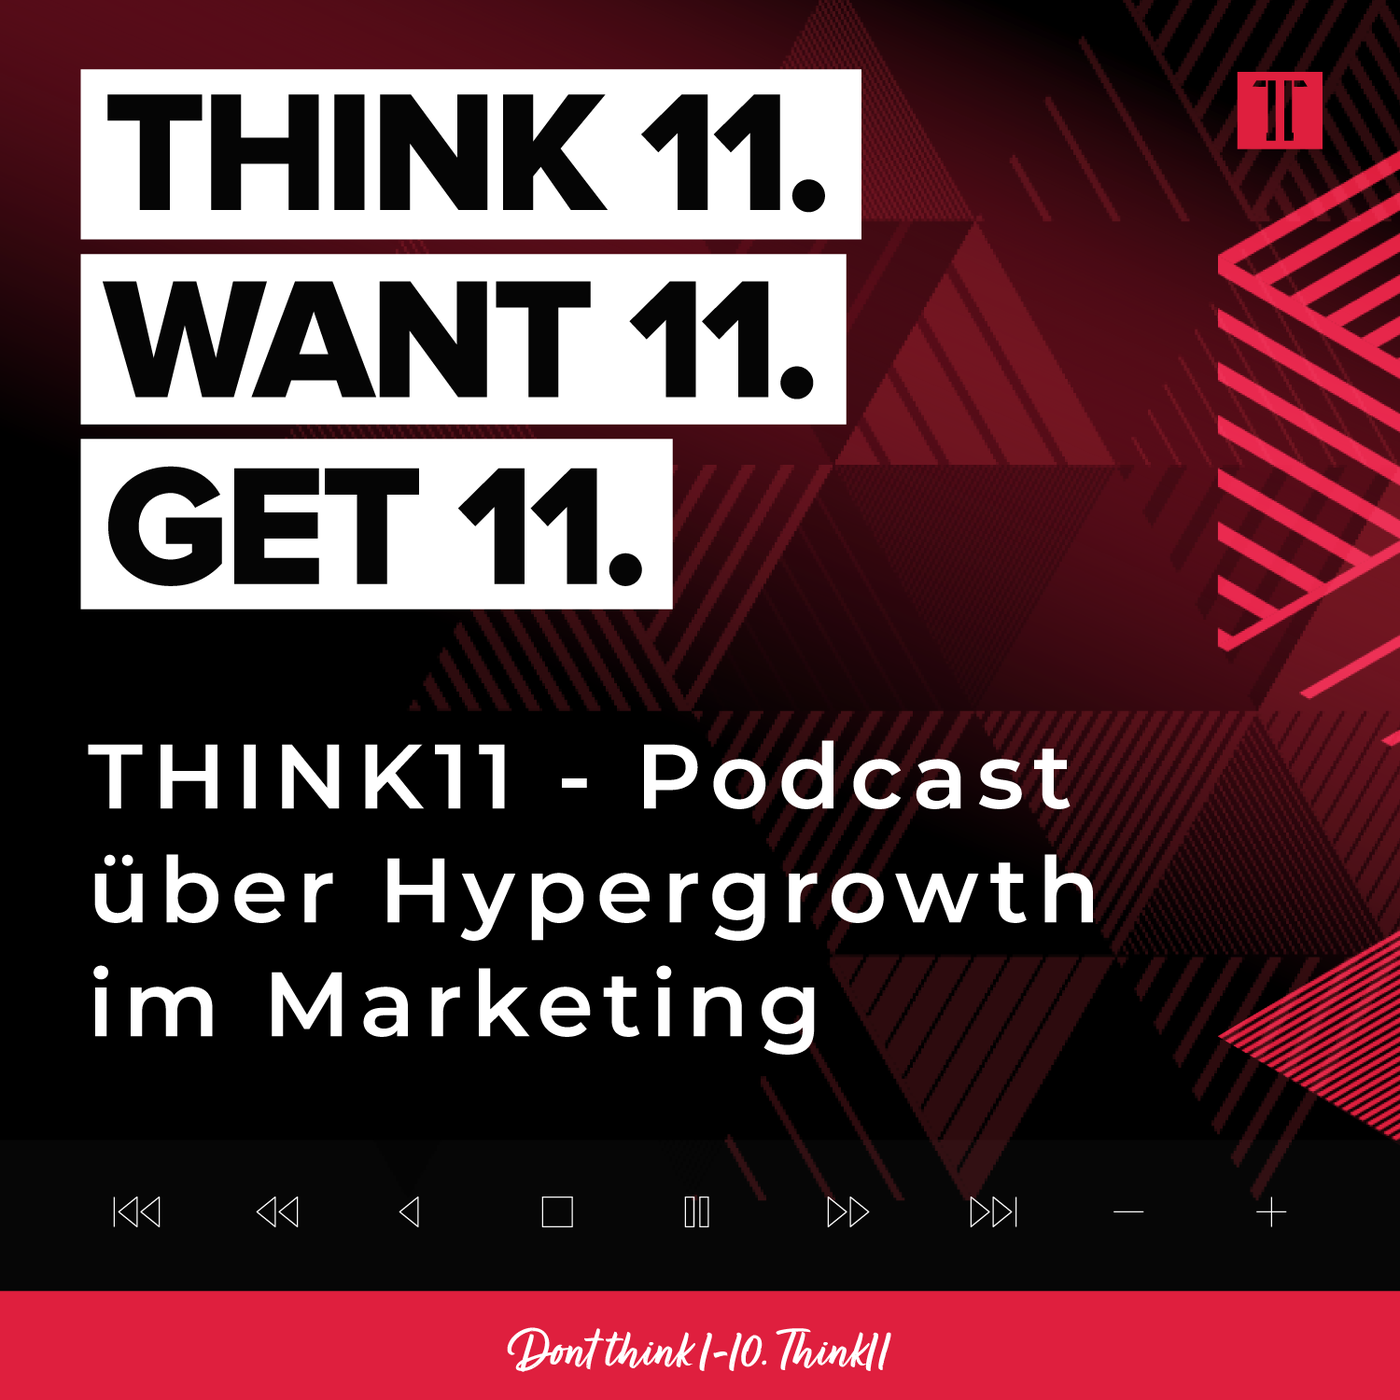 THINK11 - Podcast über Hypergrowth im Marketing